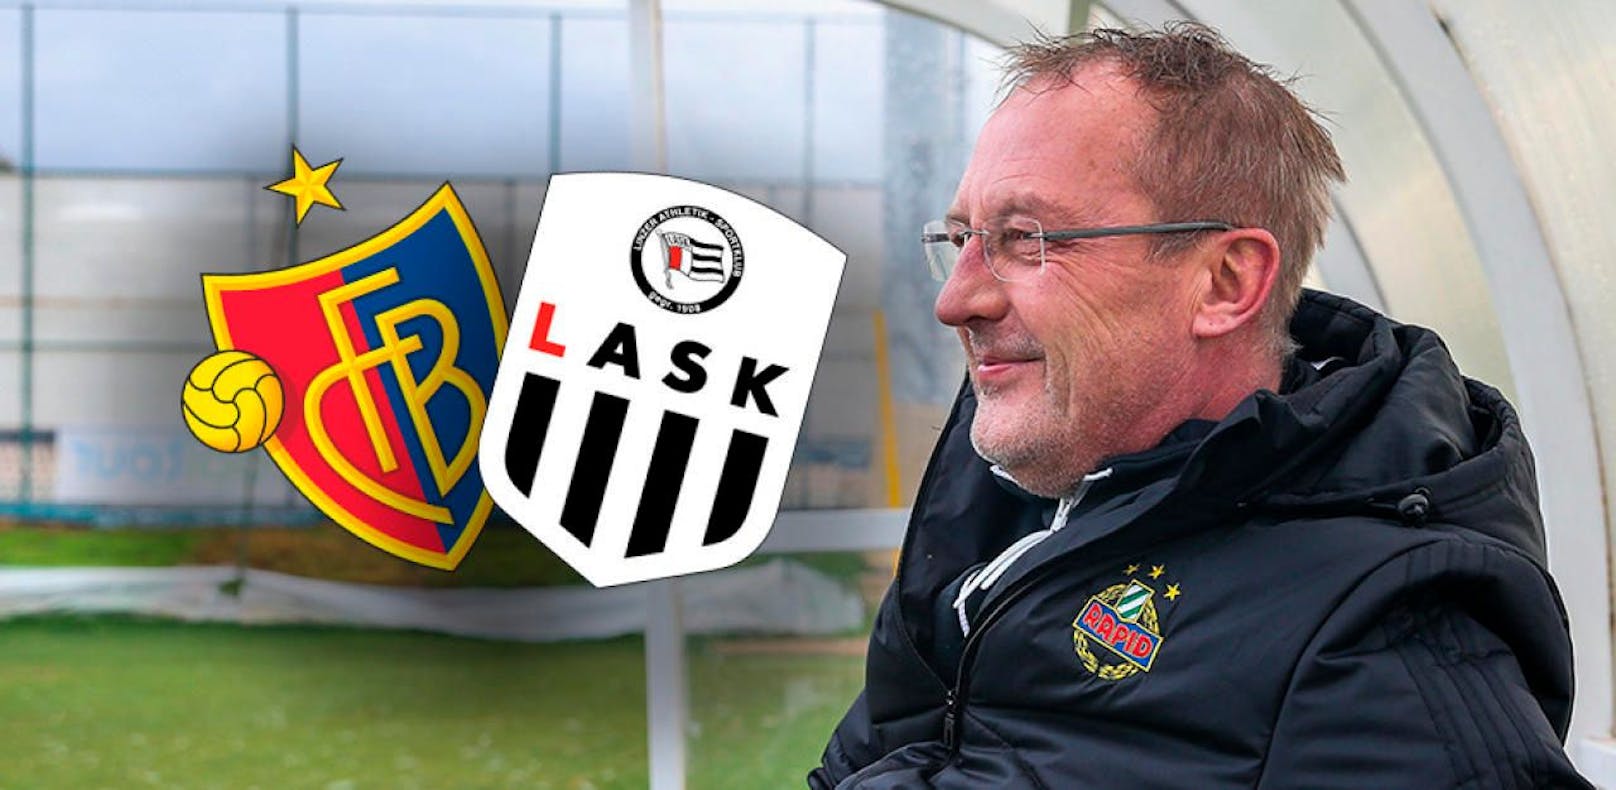 Fredy Bickel gibt dem LASK keine Chance gegen Basel